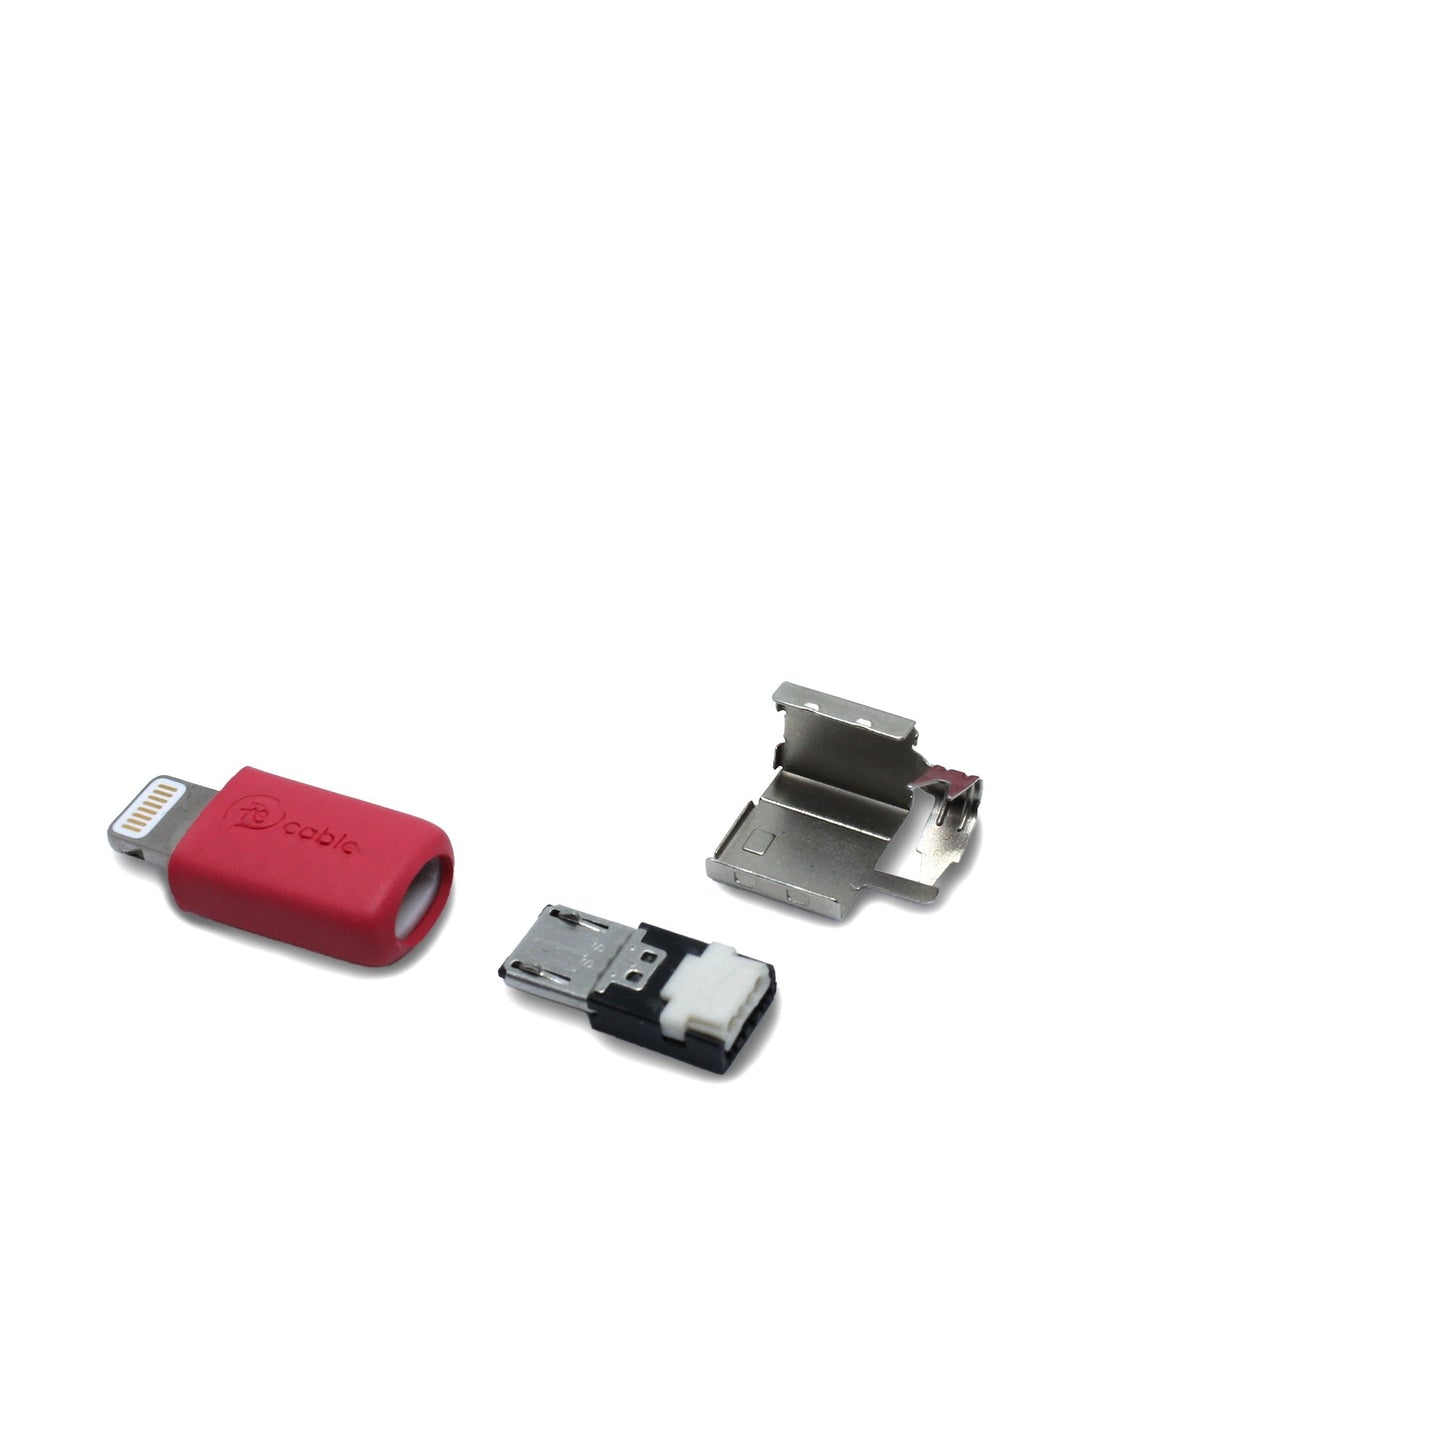 Lighting (iPhone) Reparatur-Set in rot ohne Schrumpfschlauch für Micro USB Stecker